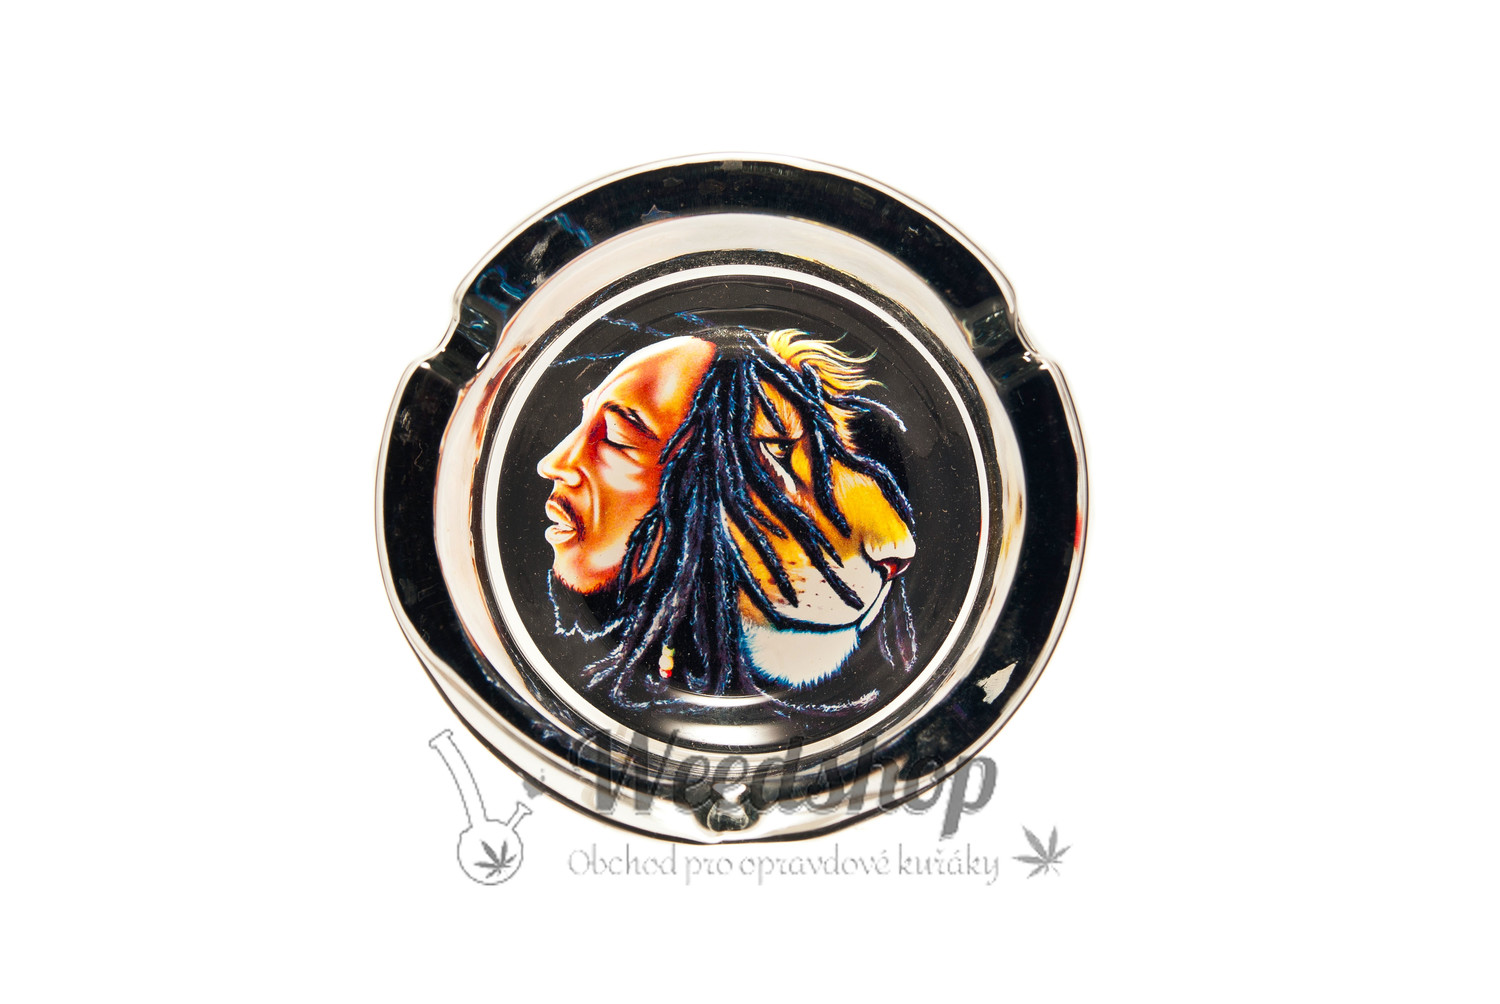 Skleněný popelník Bob Marley velký - náhodný design